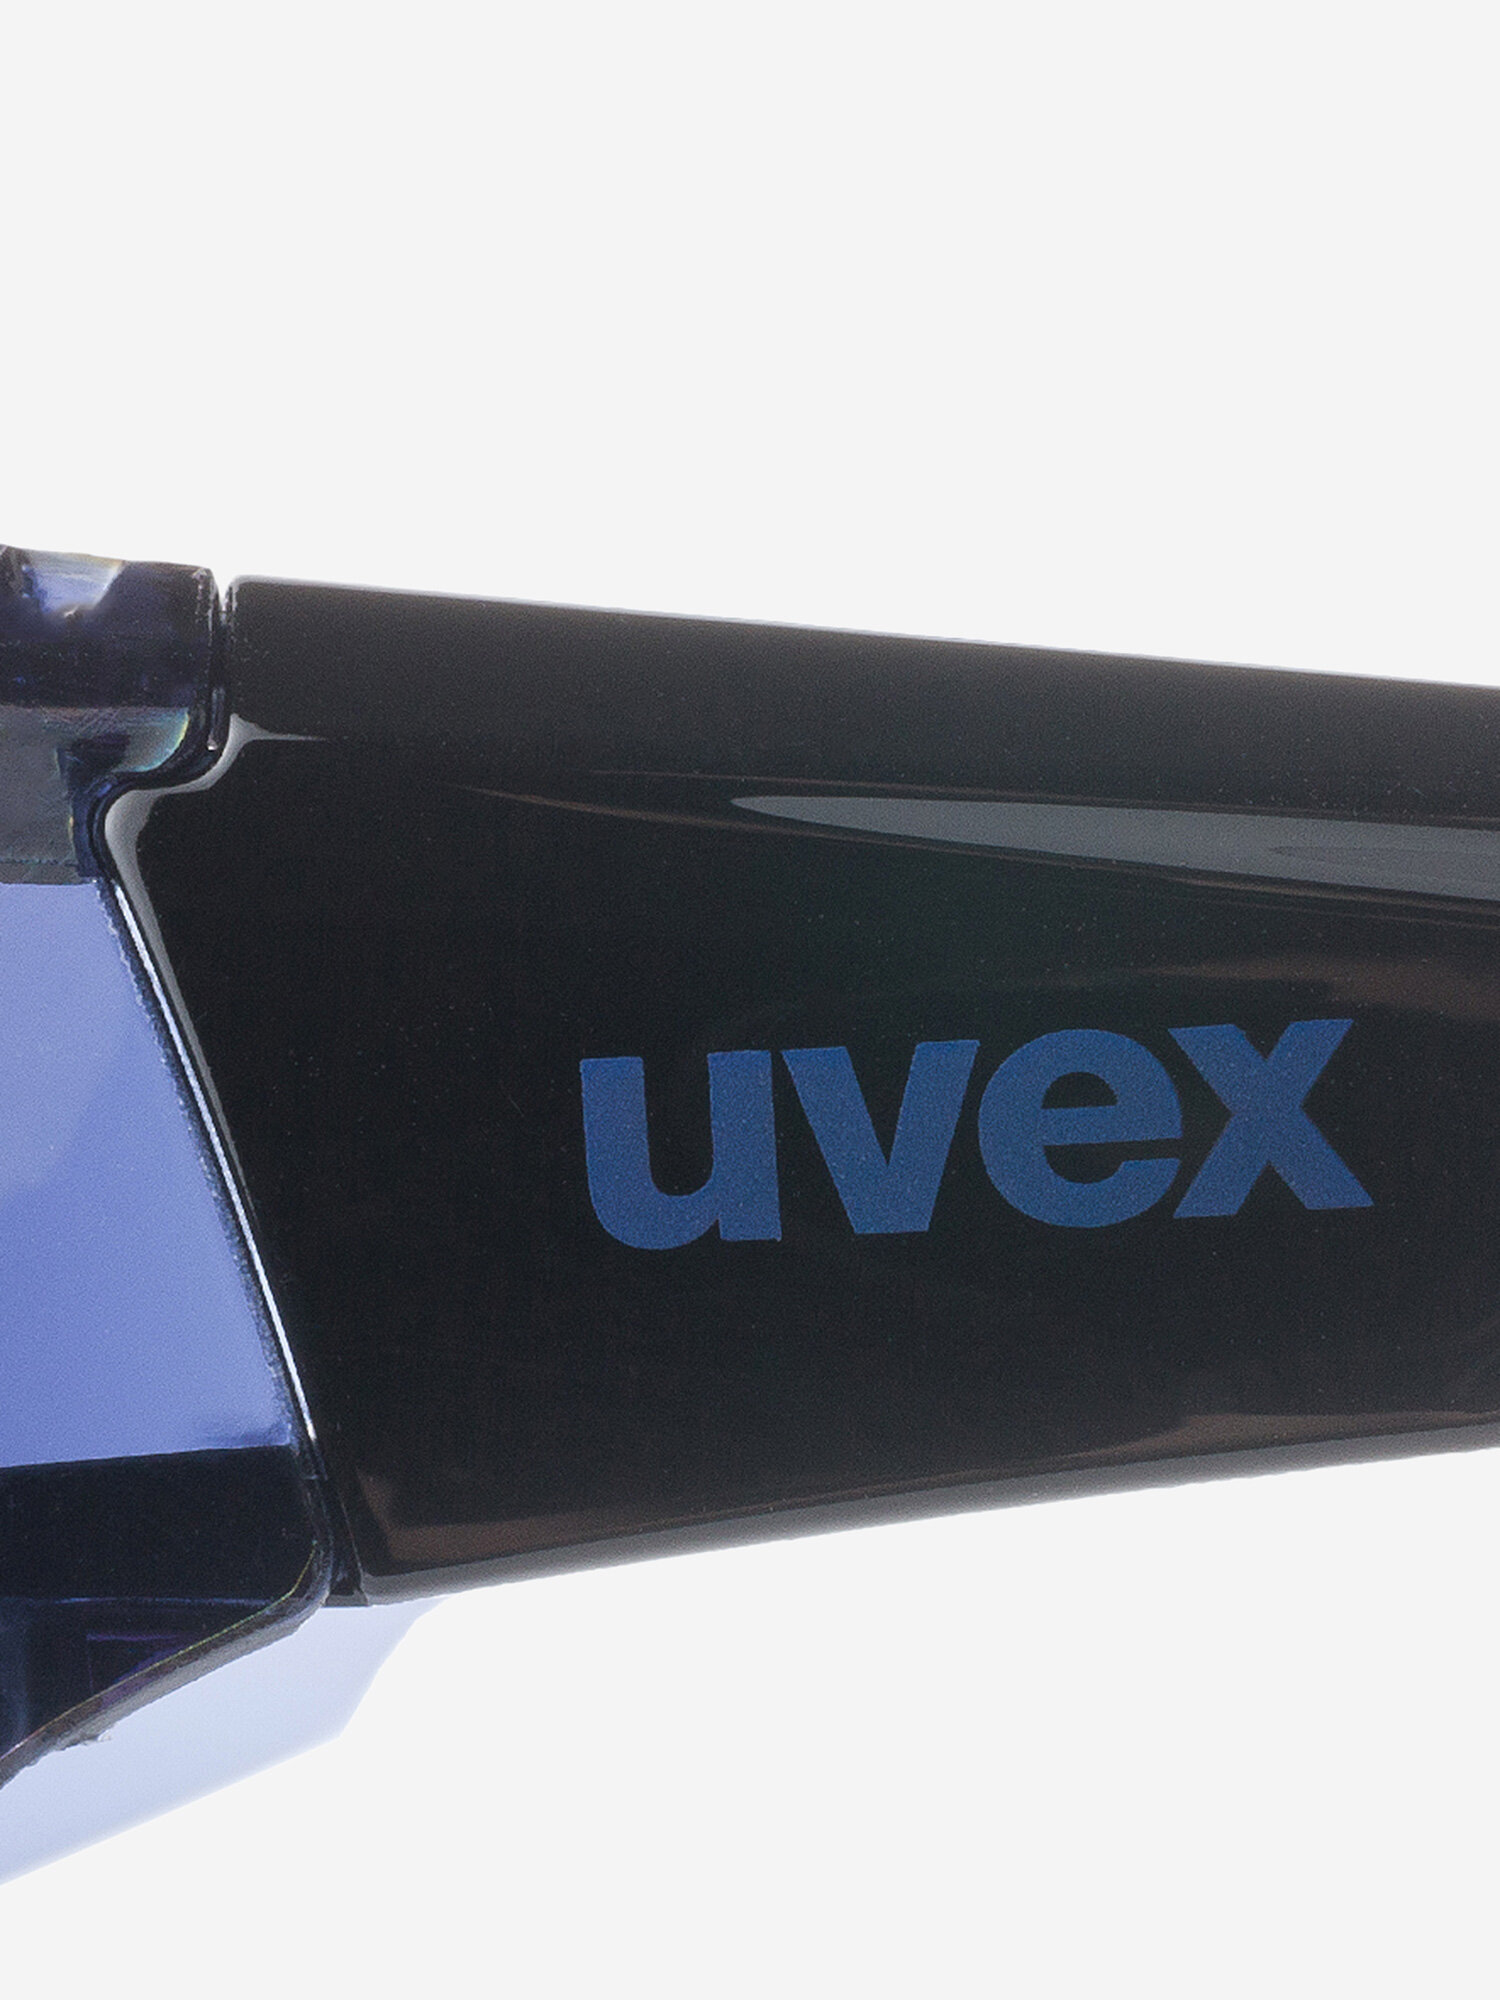 Солнцезащитные очки uvex